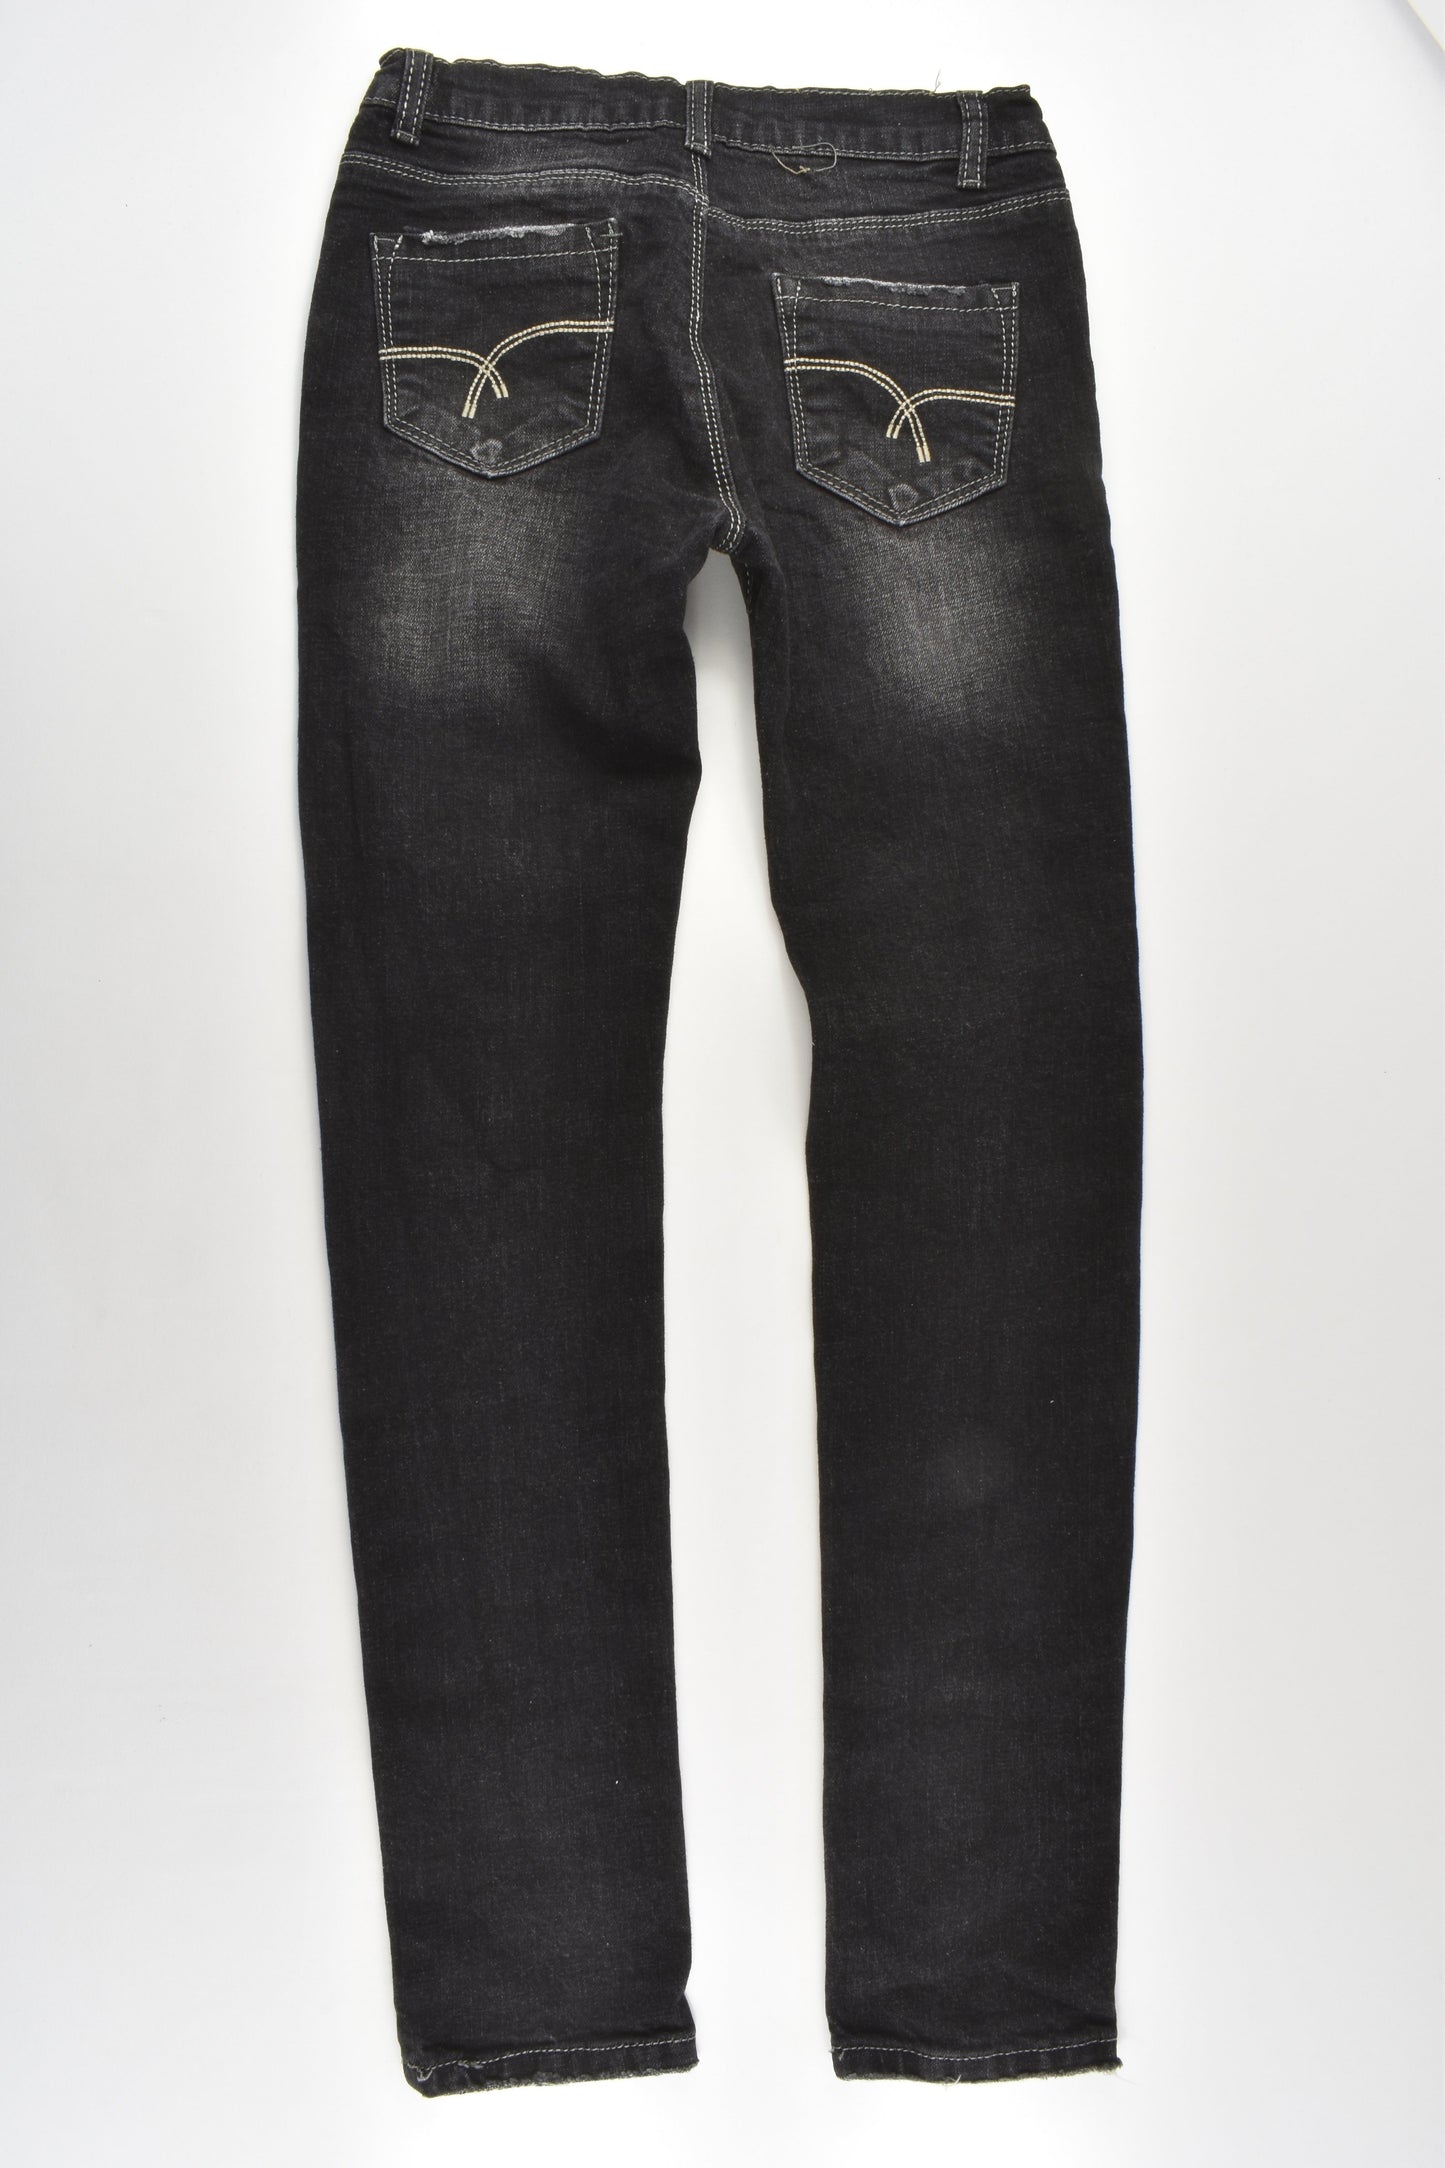 Zara Size 13-14 (140 cm) Stretchy Denim Pants